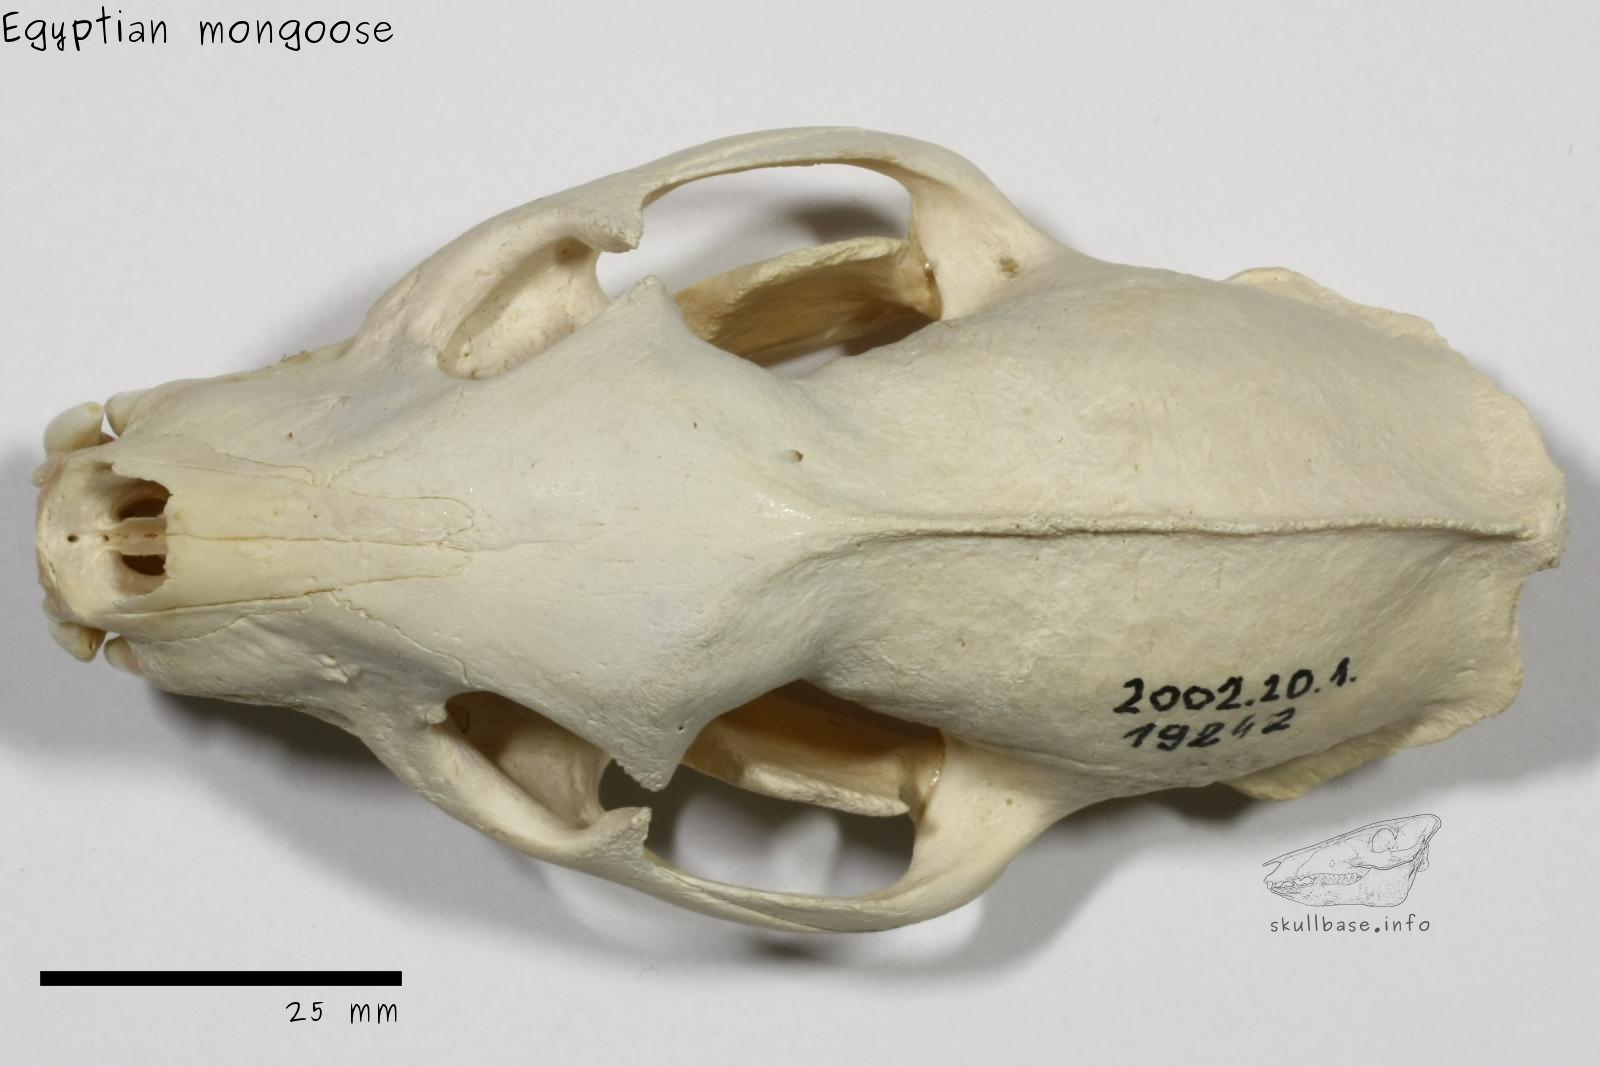 Egyptian mongoose (Herpestes ichneumon widdringtoni) skull dorsal view